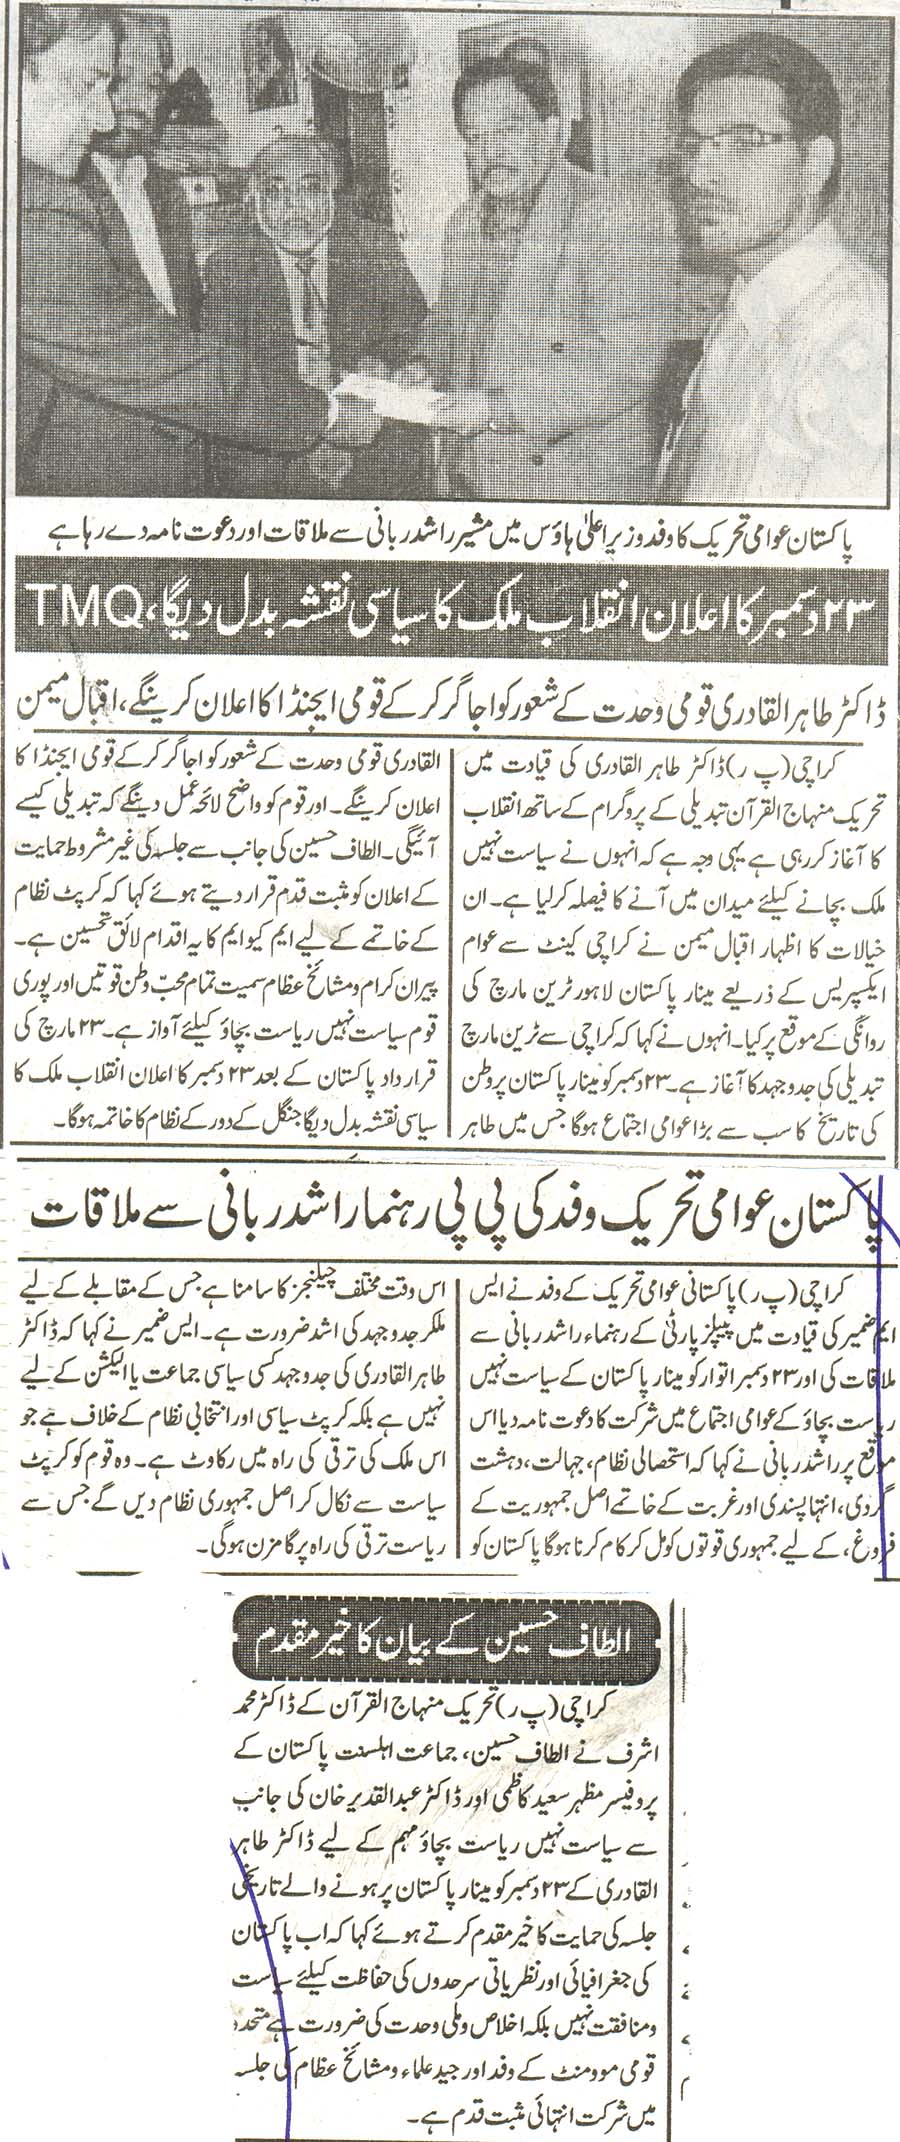 Minhaj-ul-Quran  Print Media Coveragedaily maheshar page 2